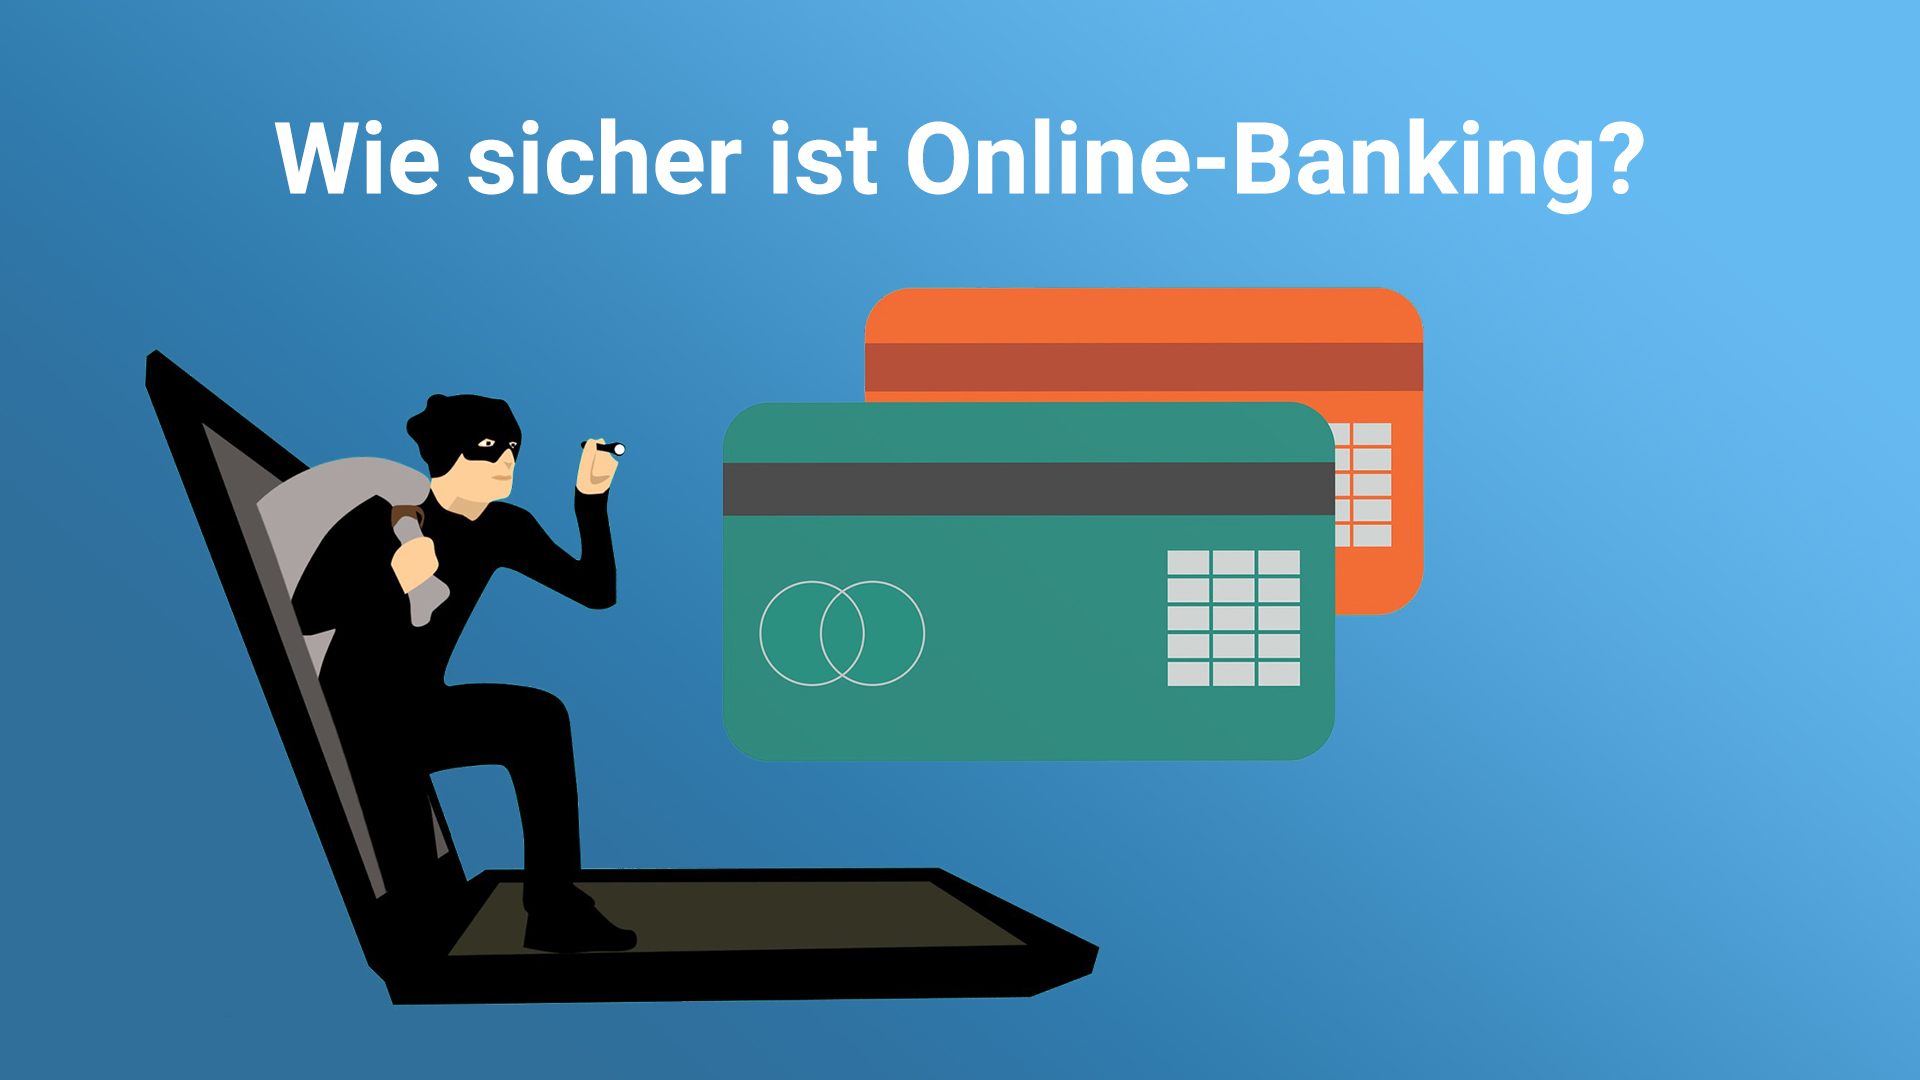 Wie sicher ist Online-Banking? - ist Online-Banking überhaupt sicher?